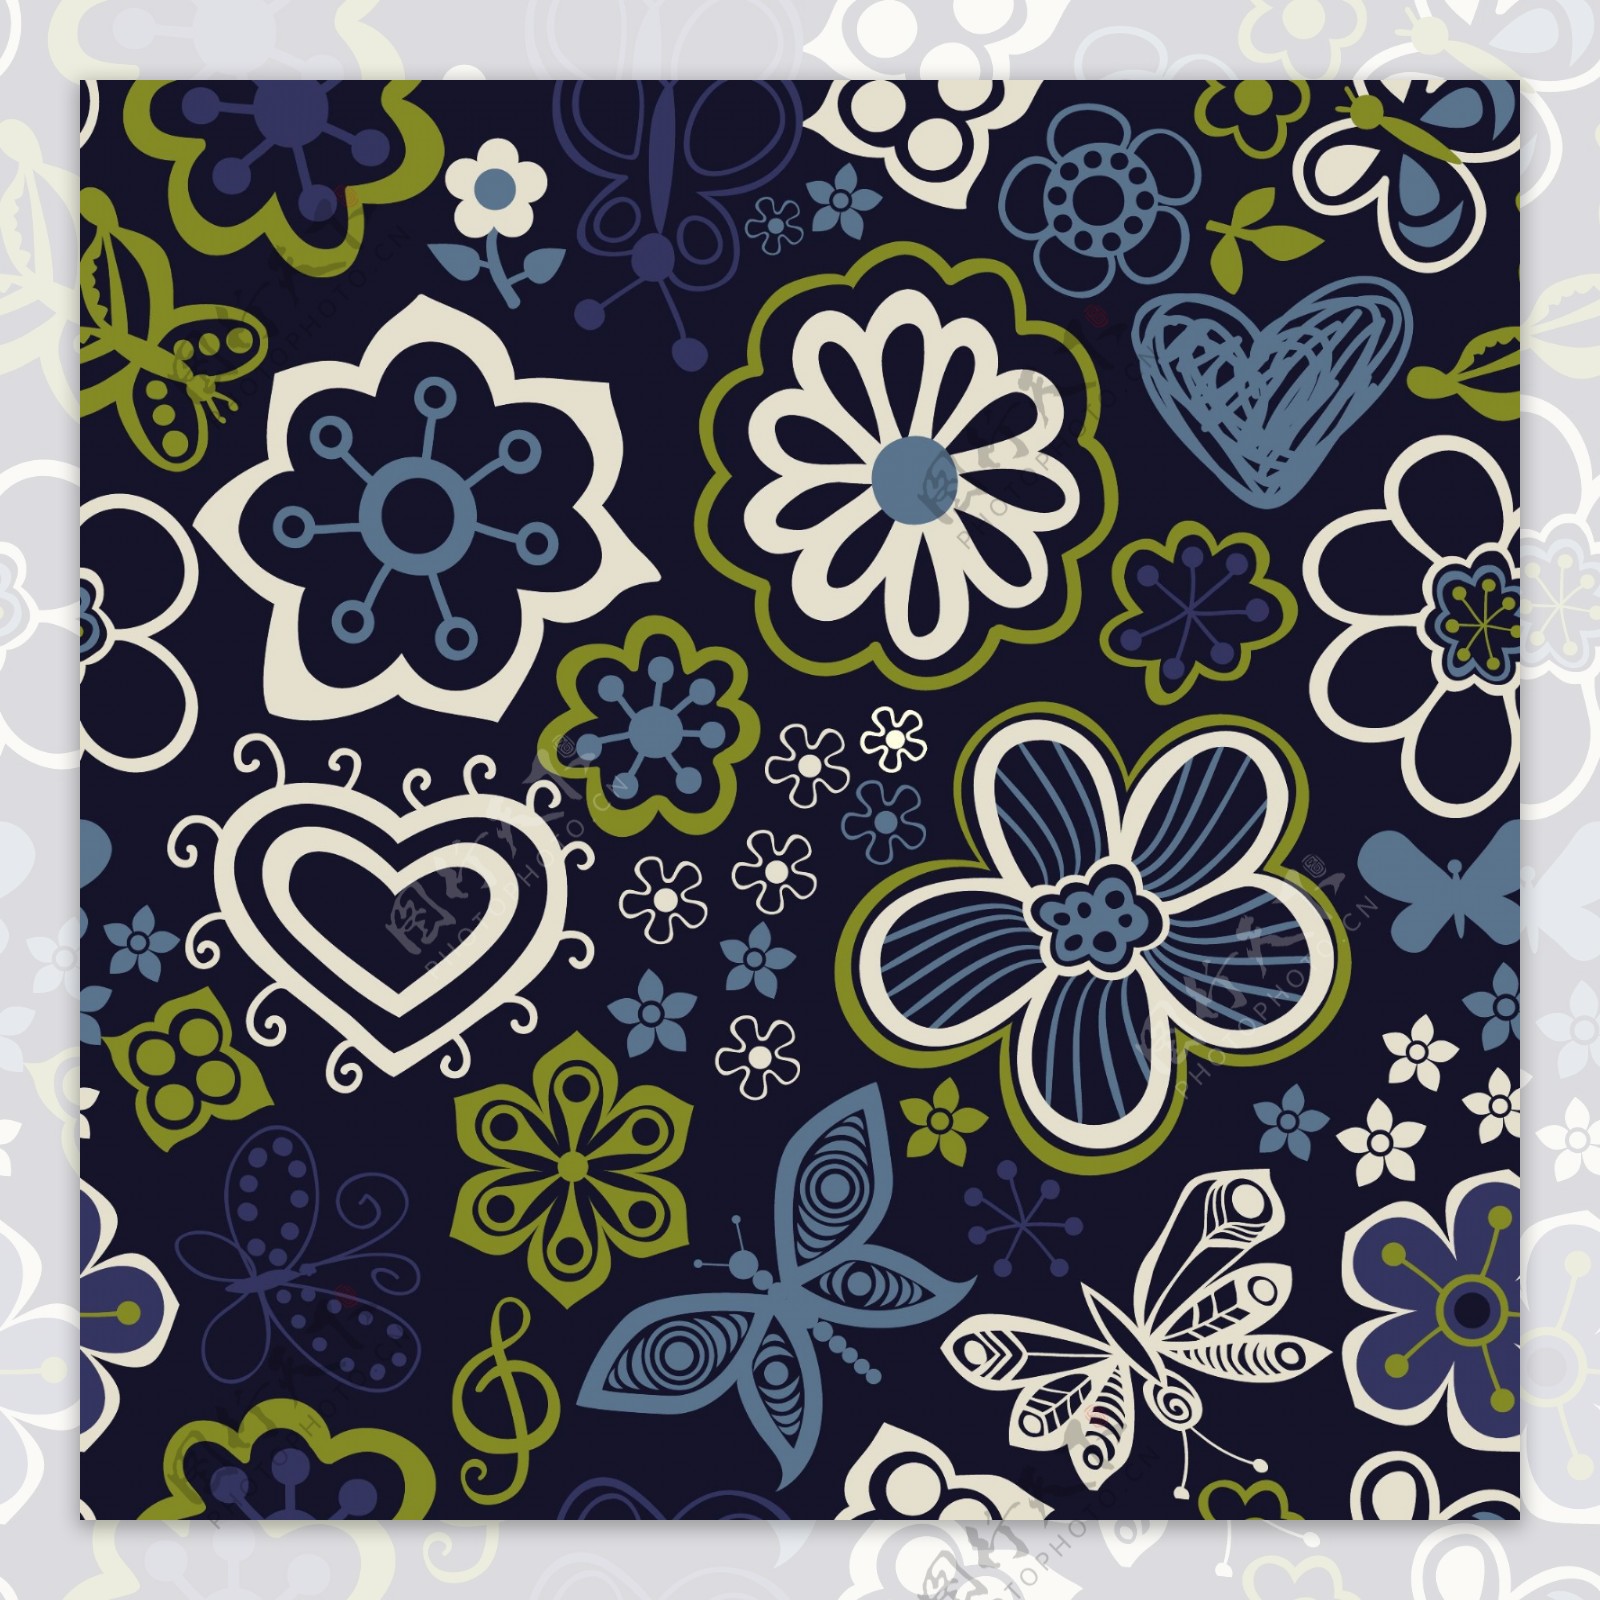 用鲜花和蝴蝶无尽的花卉图案的无缝纹理